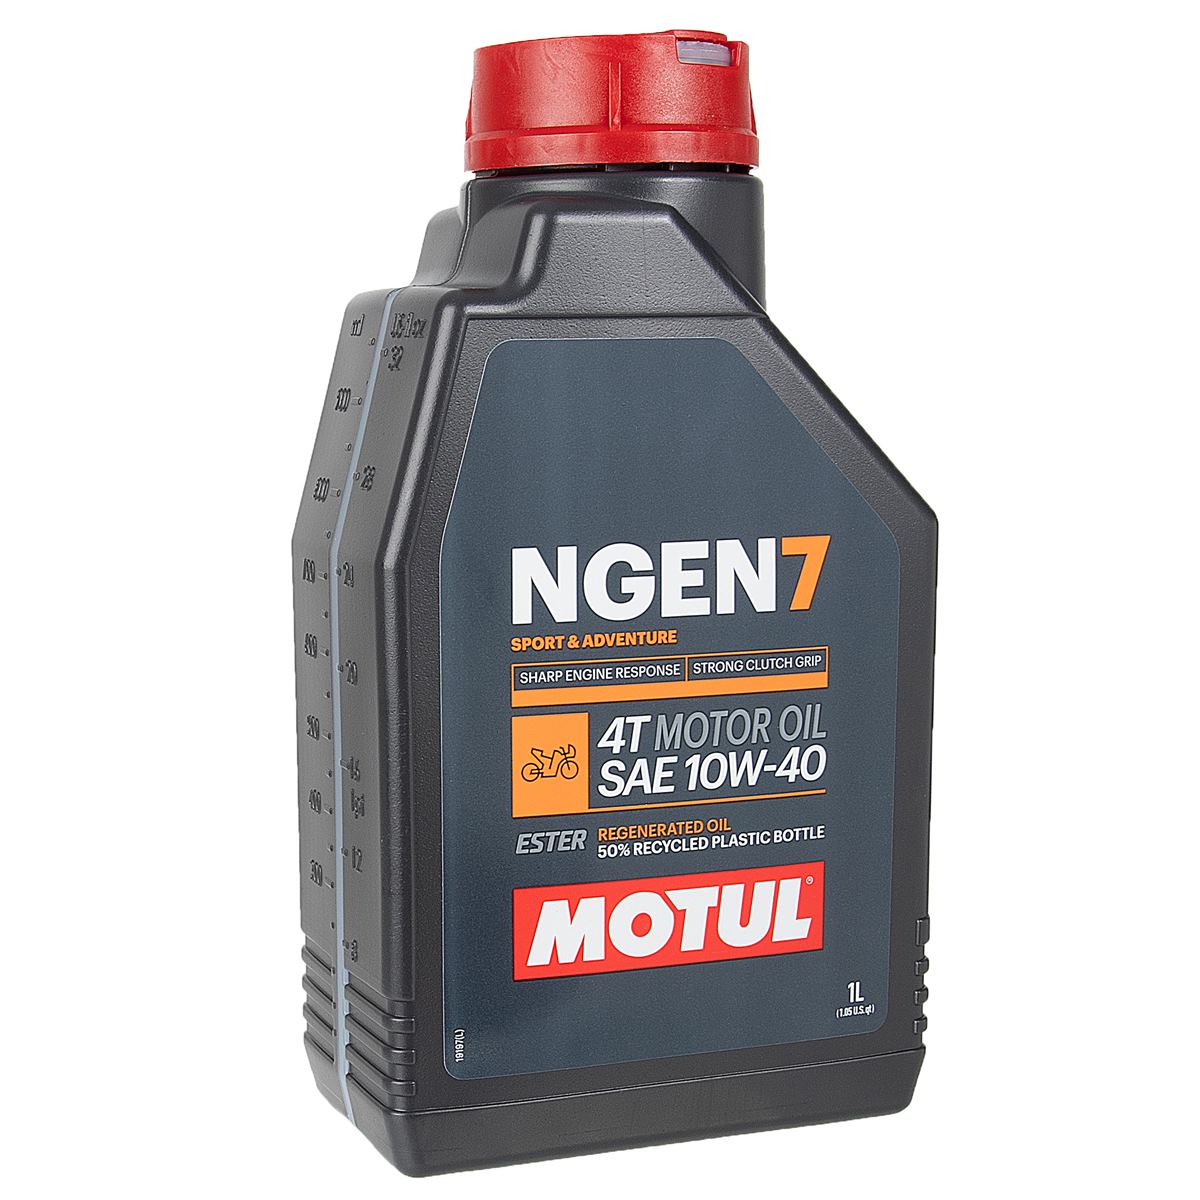 Motul Motor Oil NGEN 7 10W40, 1 Liter